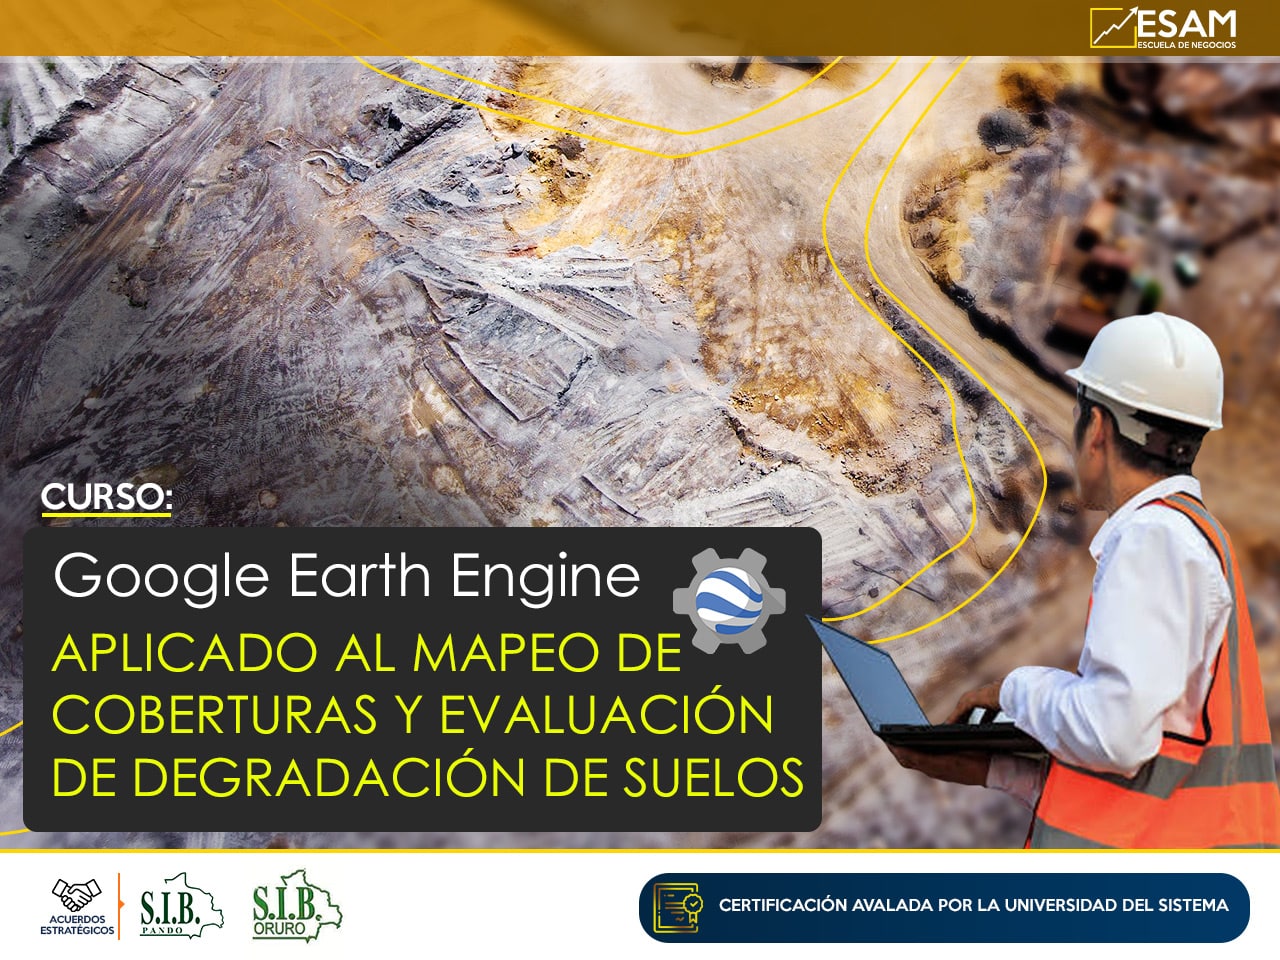 Esam Cursos GOOGLE EARTH ENGINE APLICADO AL MAPEO DE COBERTURAS Y EVALUACION DE DEGRADACION DE SUELOS